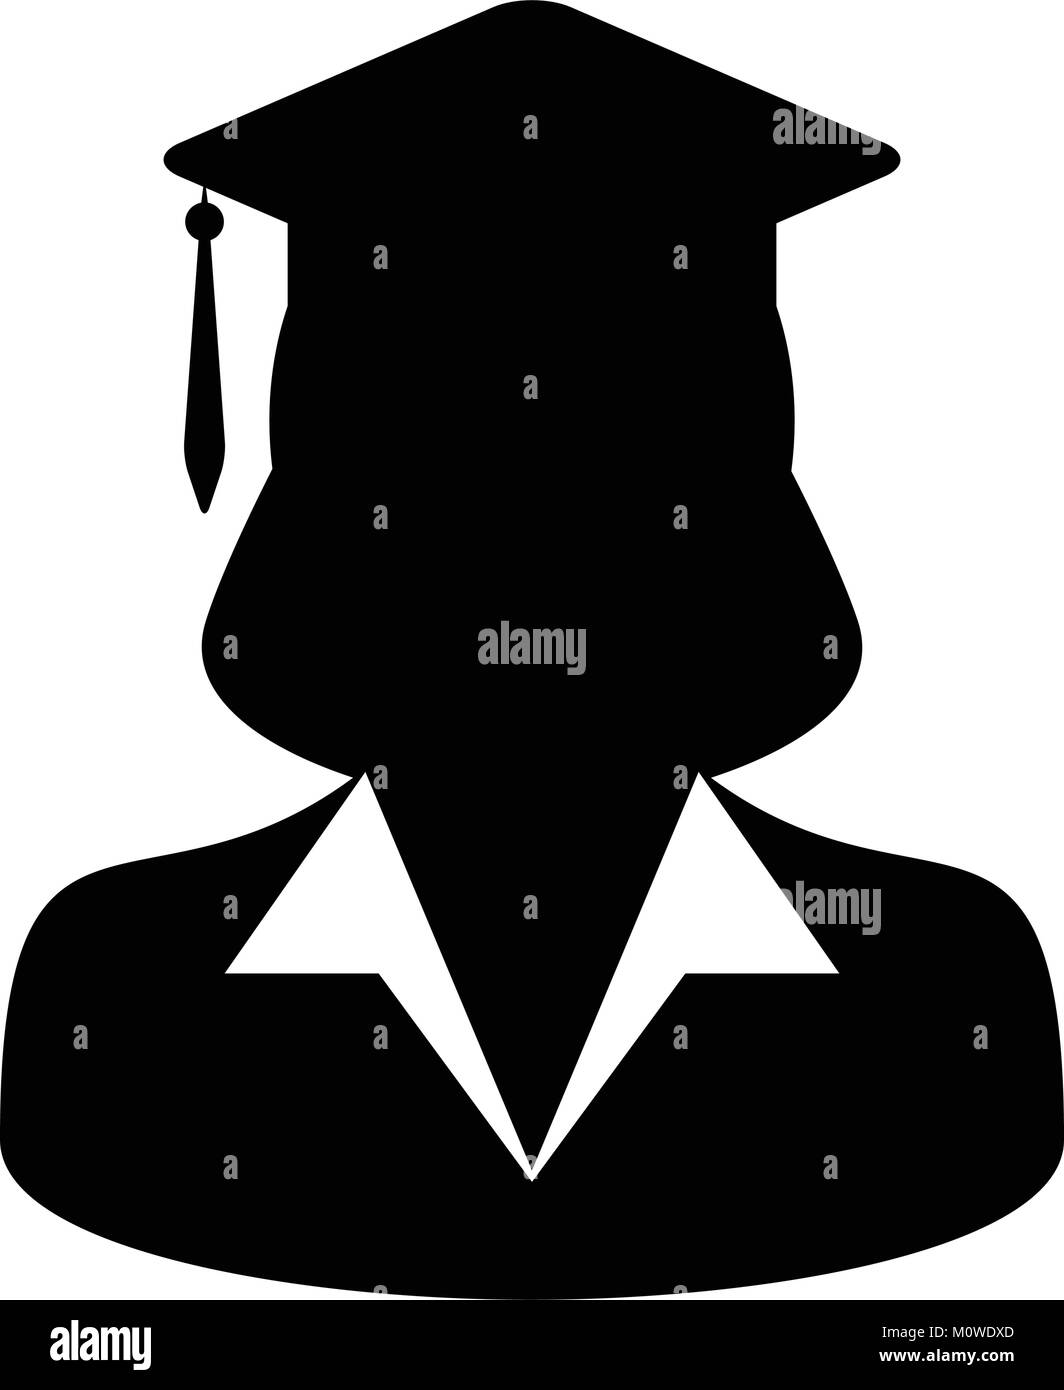 Student Symbol Vektor Graduierung mit Mörtel Board für Schule, Hochschule und Universität in Glyph Piktogramm weibliche Person Profil Avatar Abbildung Stock Vektor